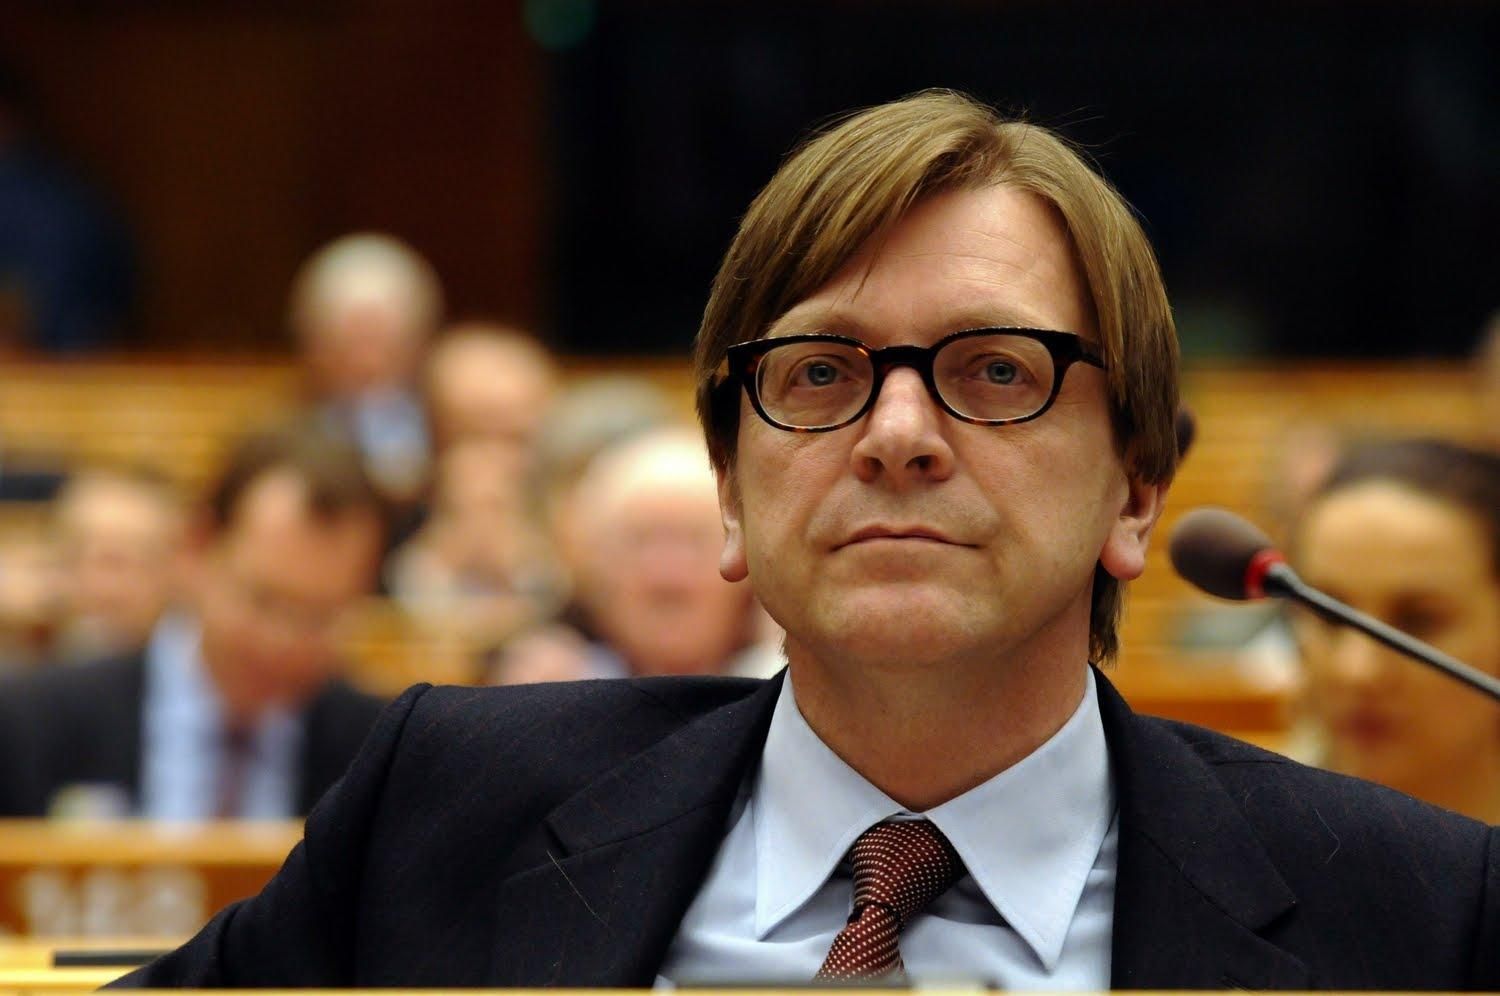 Депутат Европарламента раскритиковал ЕС и призвал по-настоящему "взяться" за людей Путина